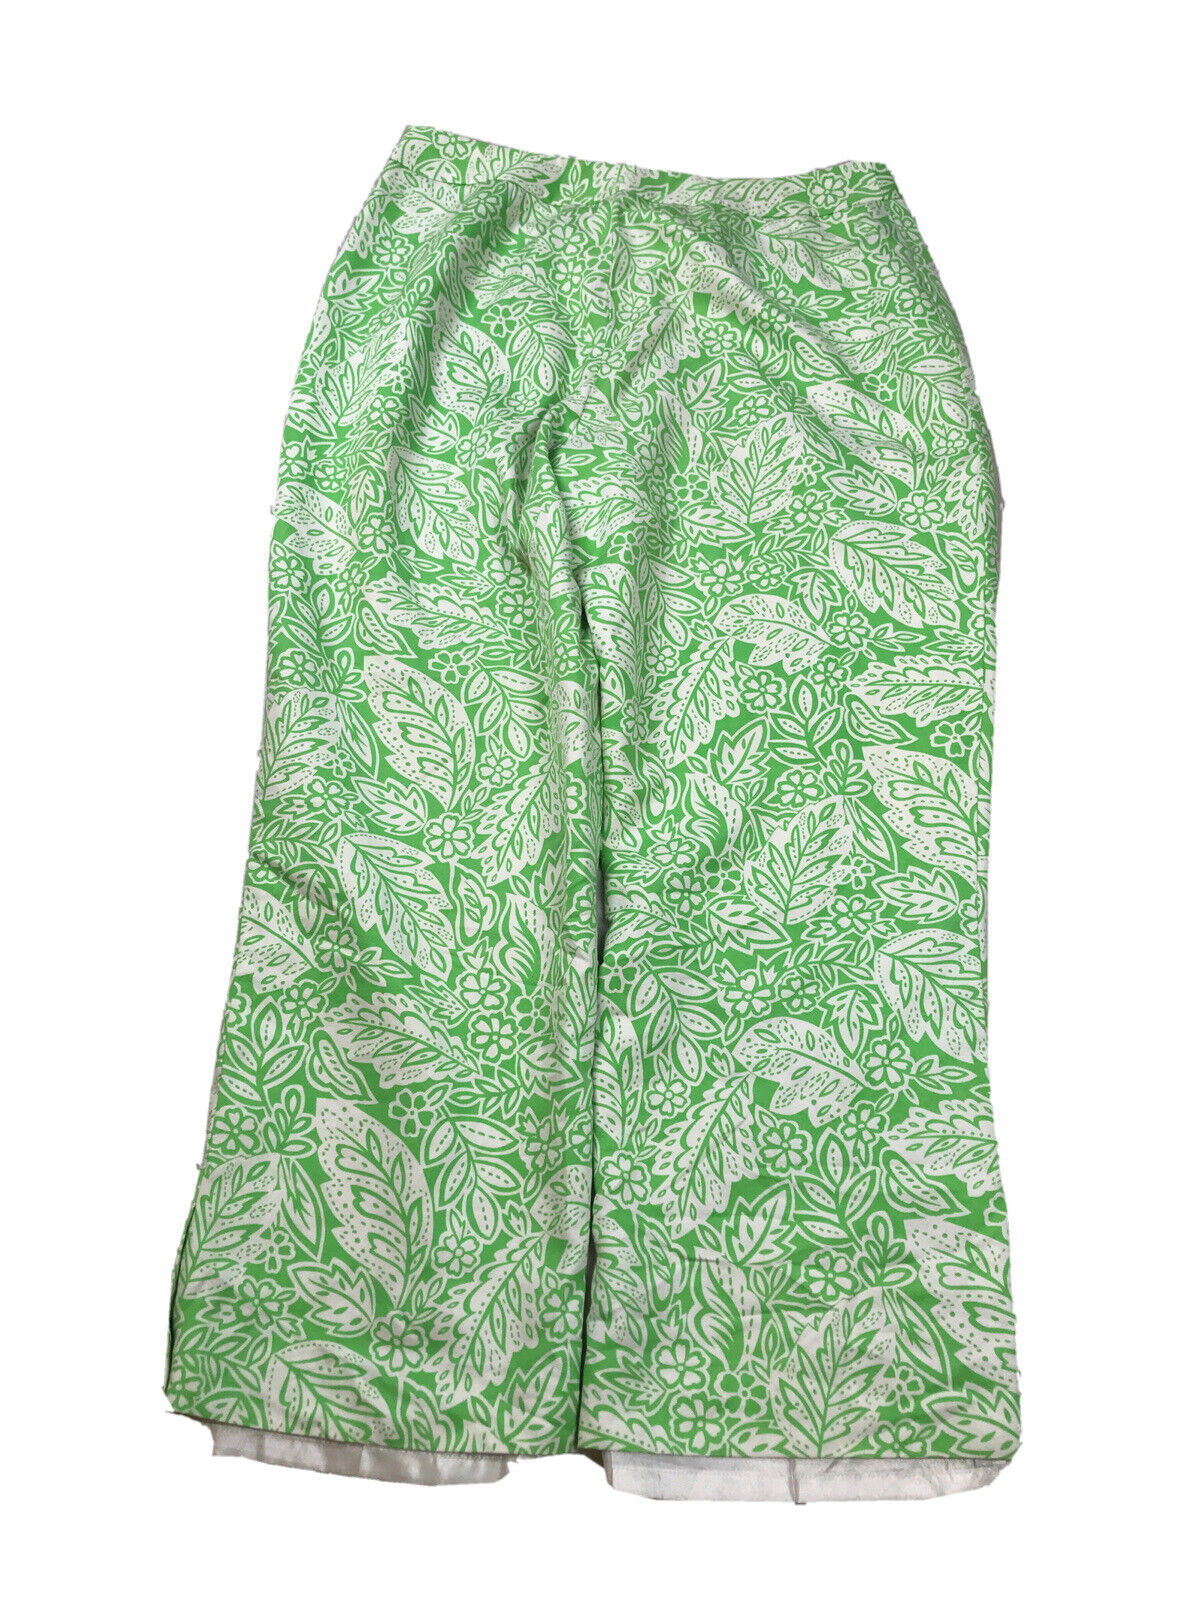 Pendelton Pantalones de verano con cremallera lateral y forro floral verde para mujer - 8